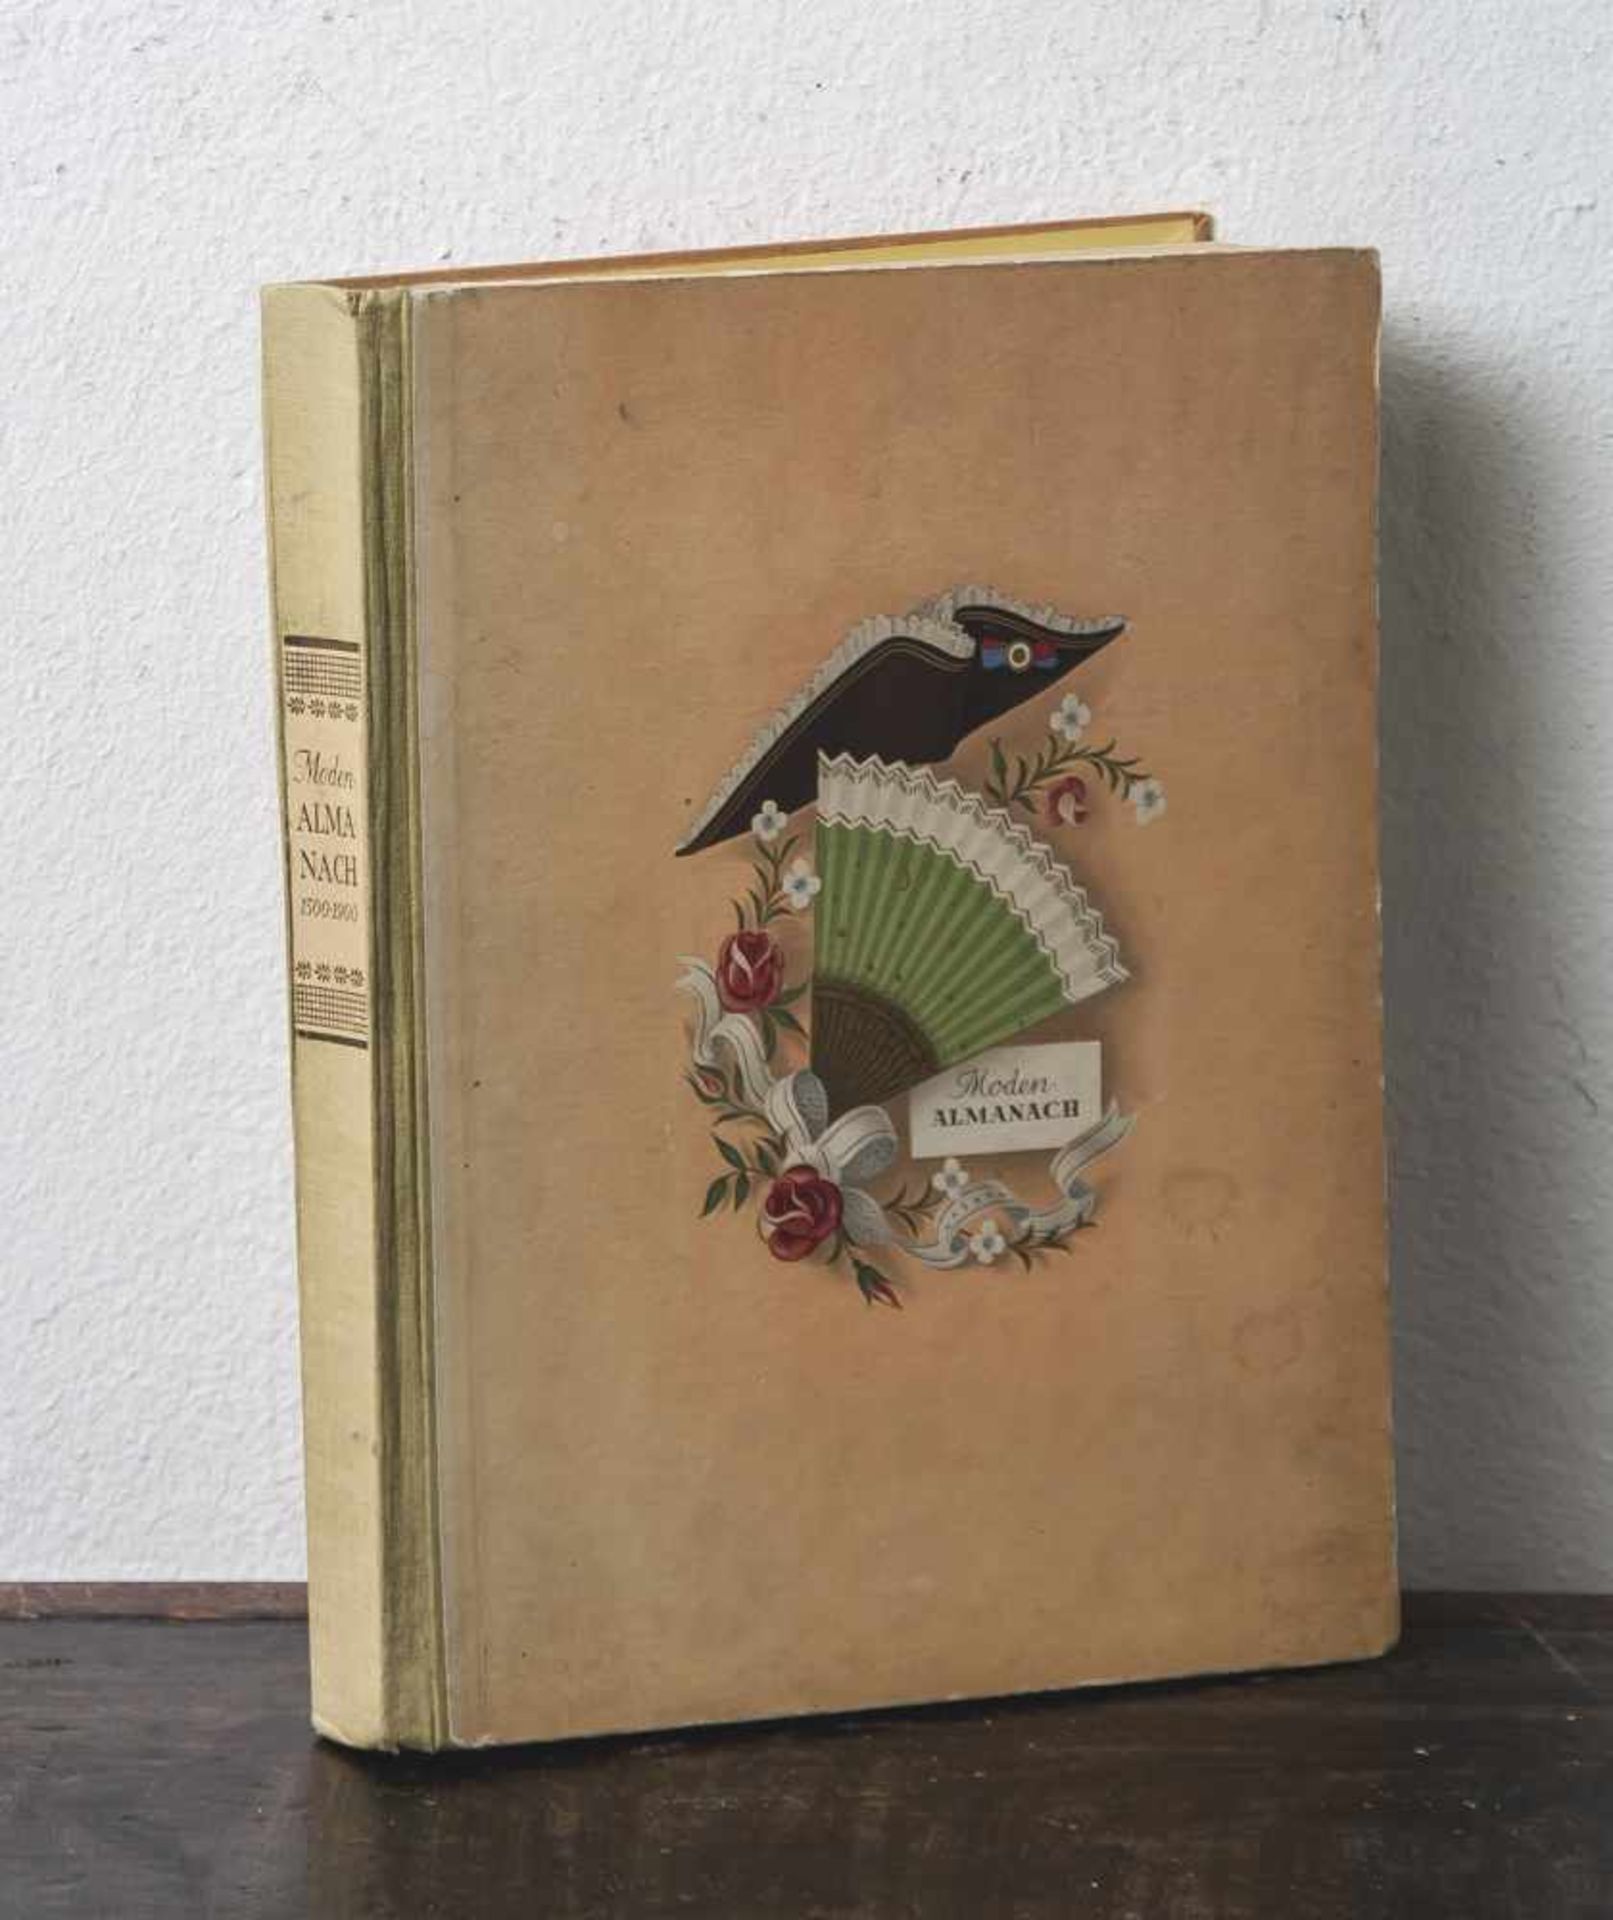 Zigarettenbilderalbum "Moden-Almanach. Modenbilder aus vier Jahrhunderten 1500-1900", Hrsg. vom Haus